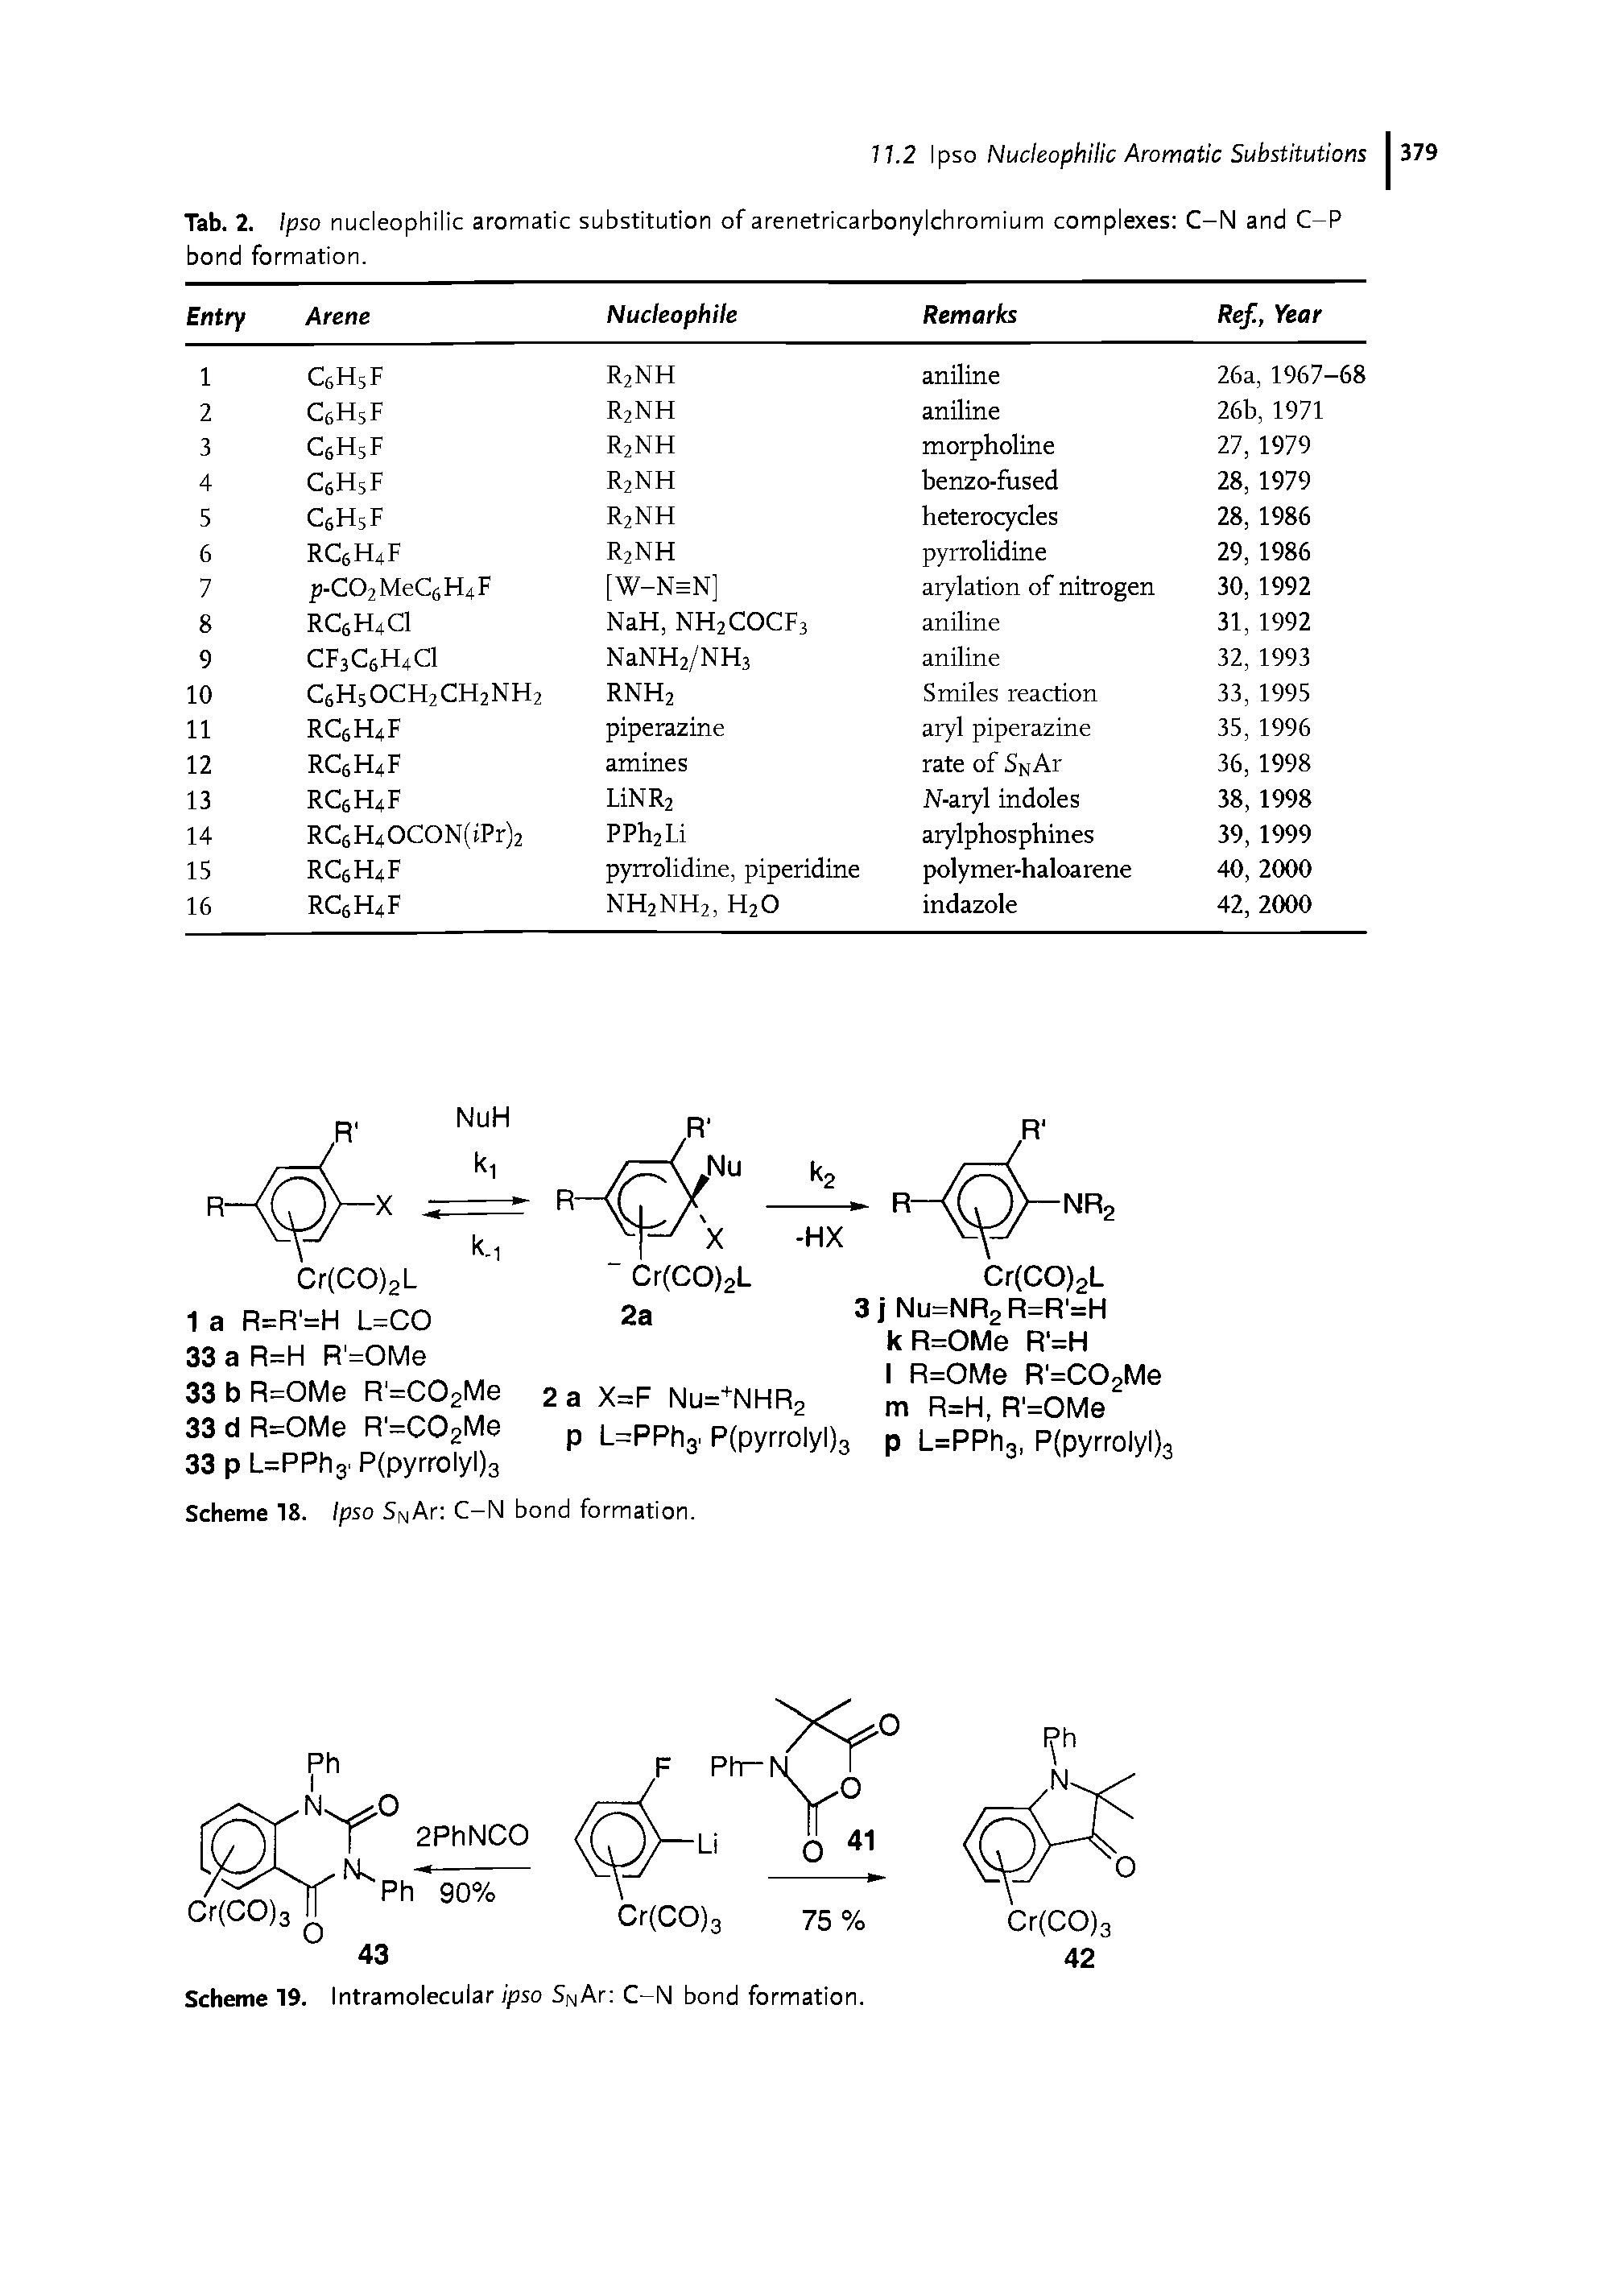 Scheme 19. Intramolecular ipso SNAr C-N bond formation.